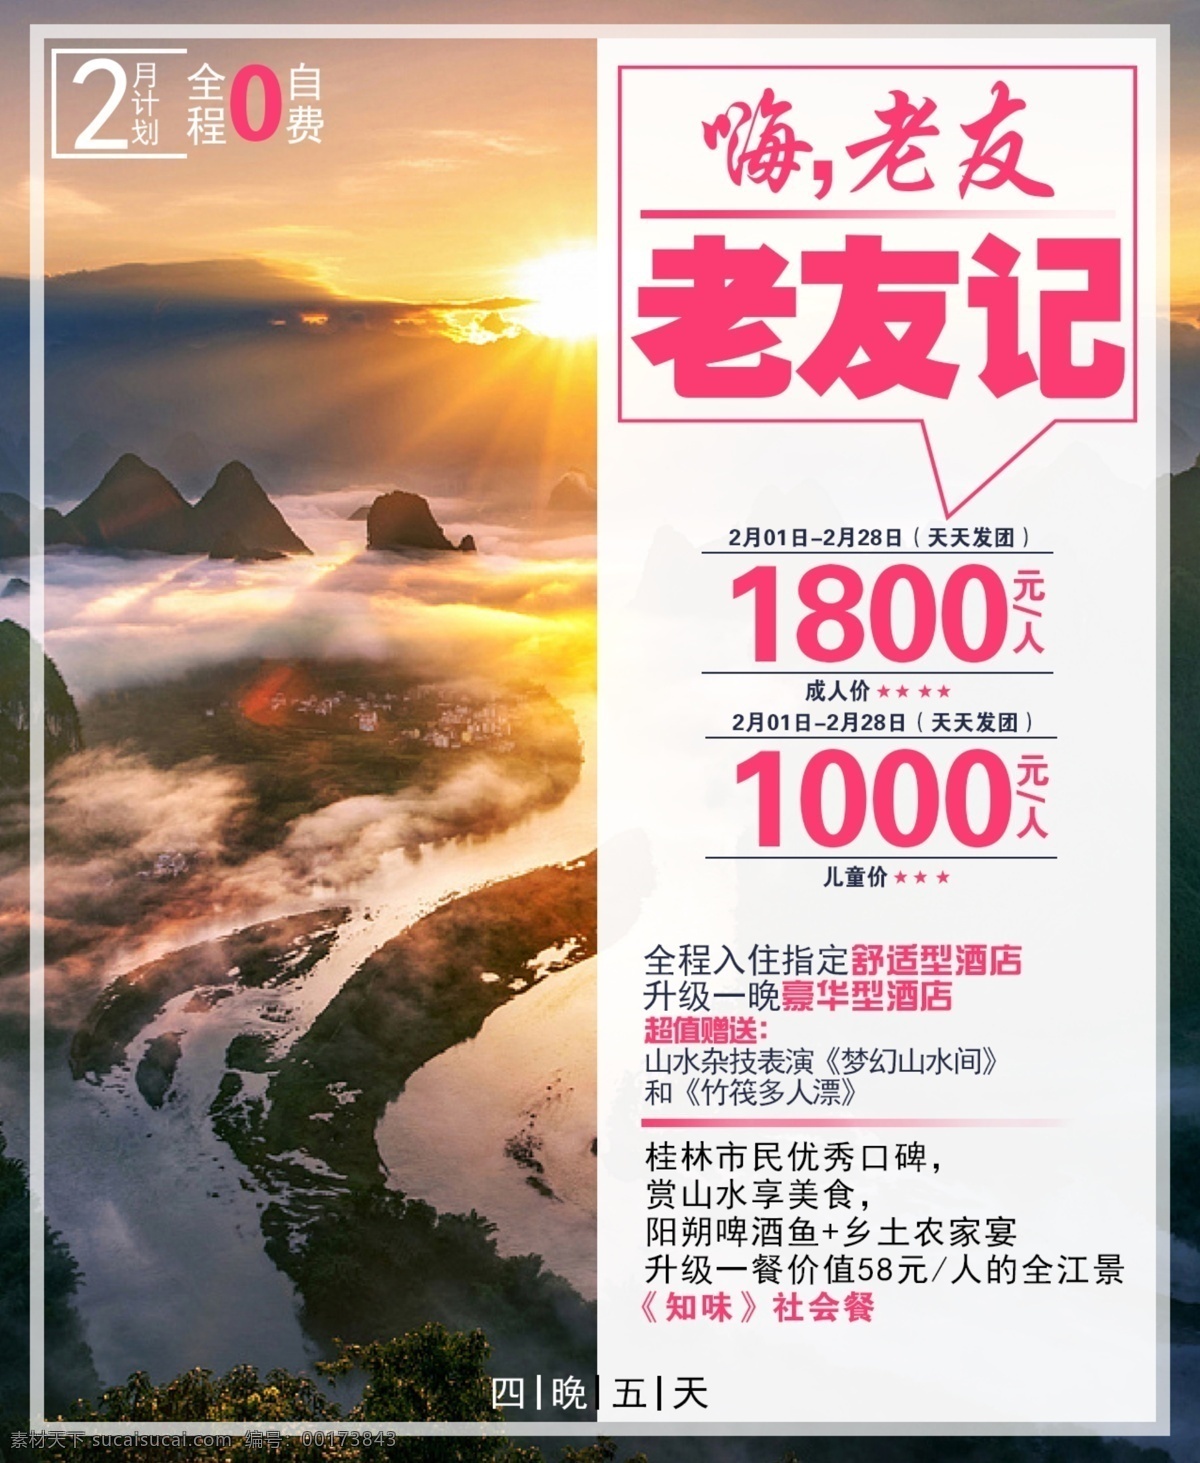 老友记 嗨 老友 简写 海报 宣传 广告 平面 高端 品质 行走 旅游